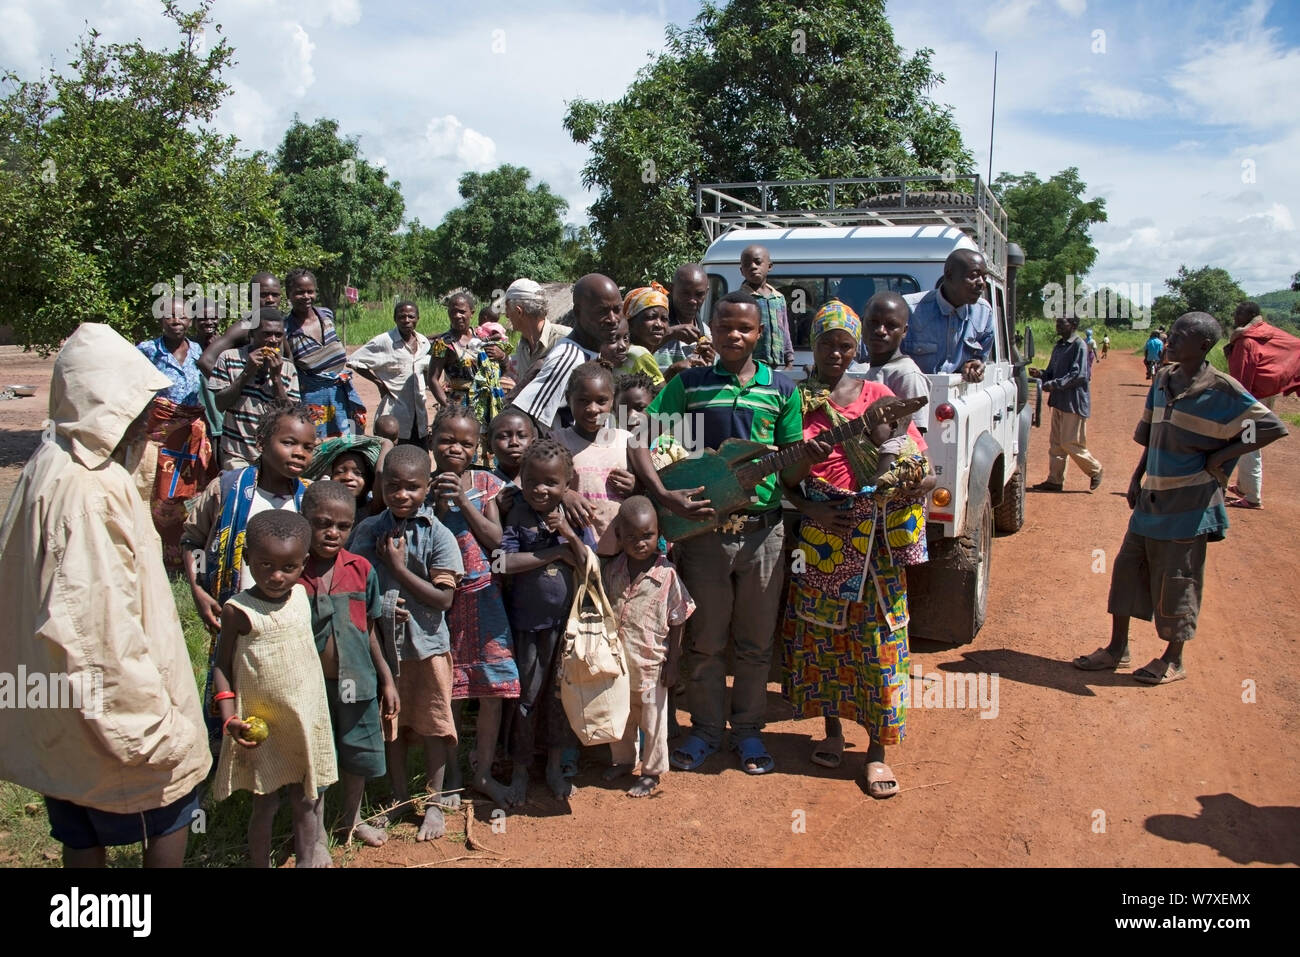 Gruppe der lokalen Bevölkerung ausserhalb des Dorfes an der Straße nach Katanga in der Demokratischen Republik Kongo, März 2012. Stockfoto